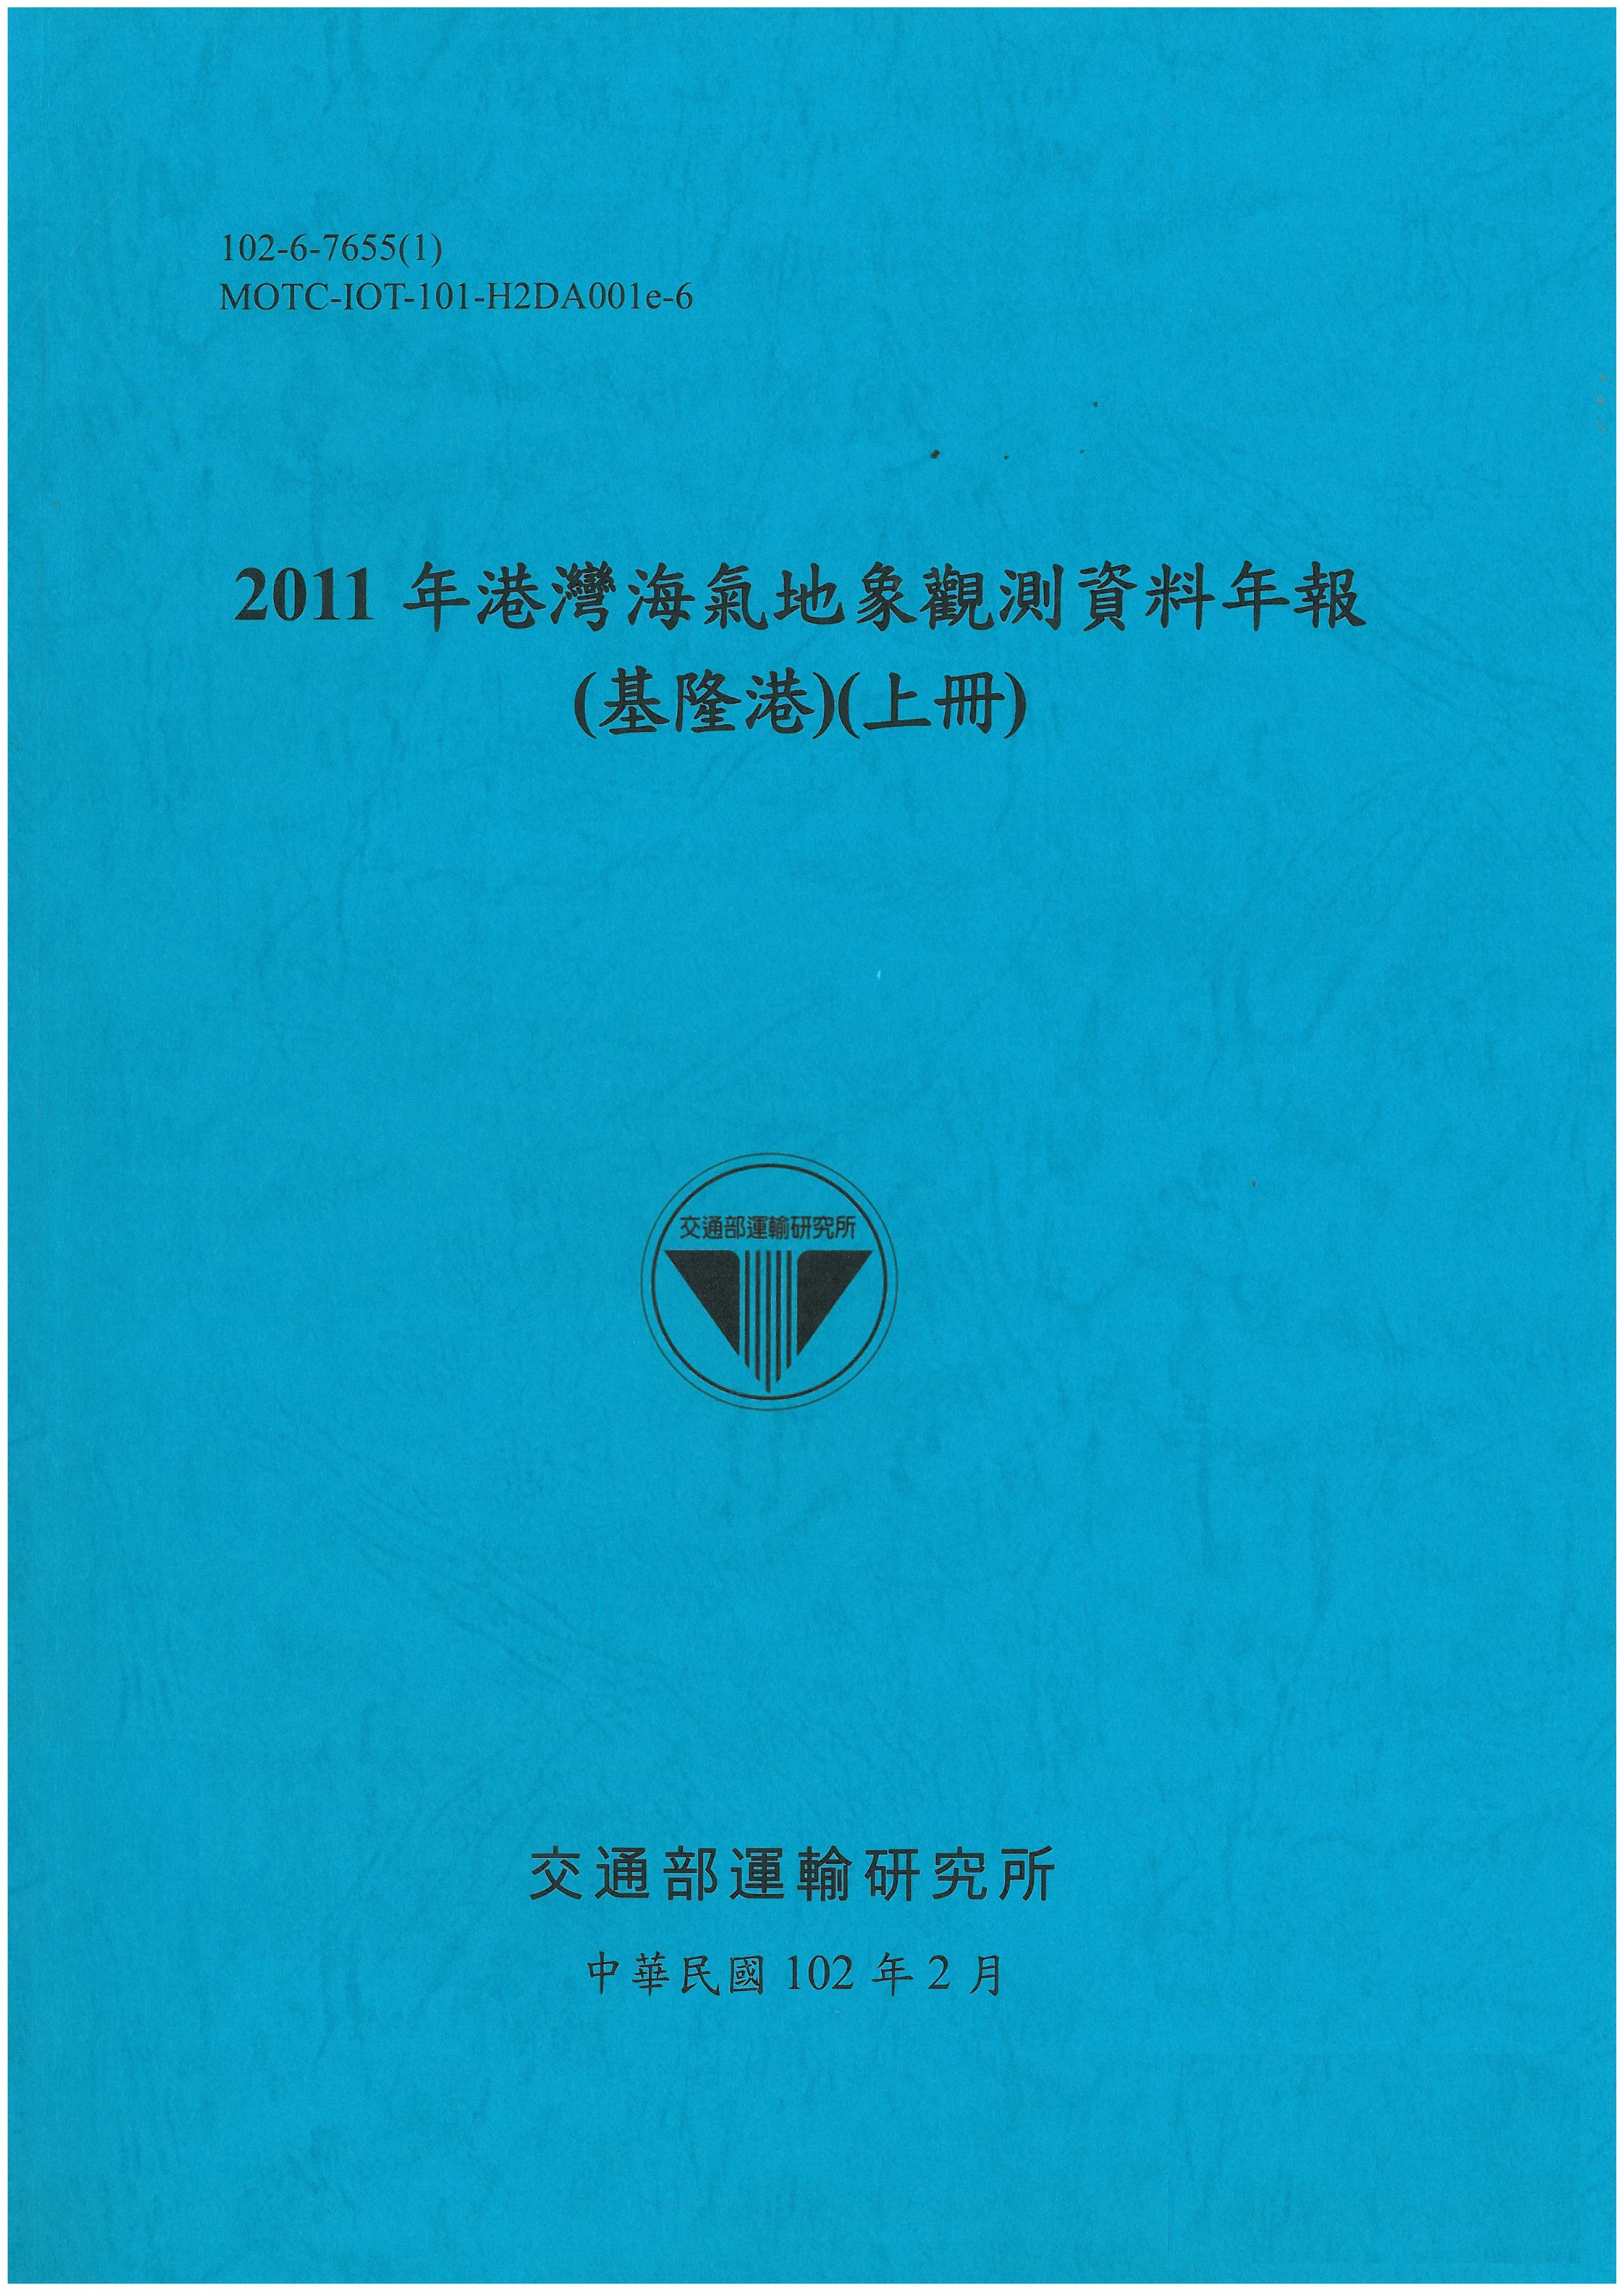 2011年港灣海氣地象觀測資料年報(基隆港)(上冊)